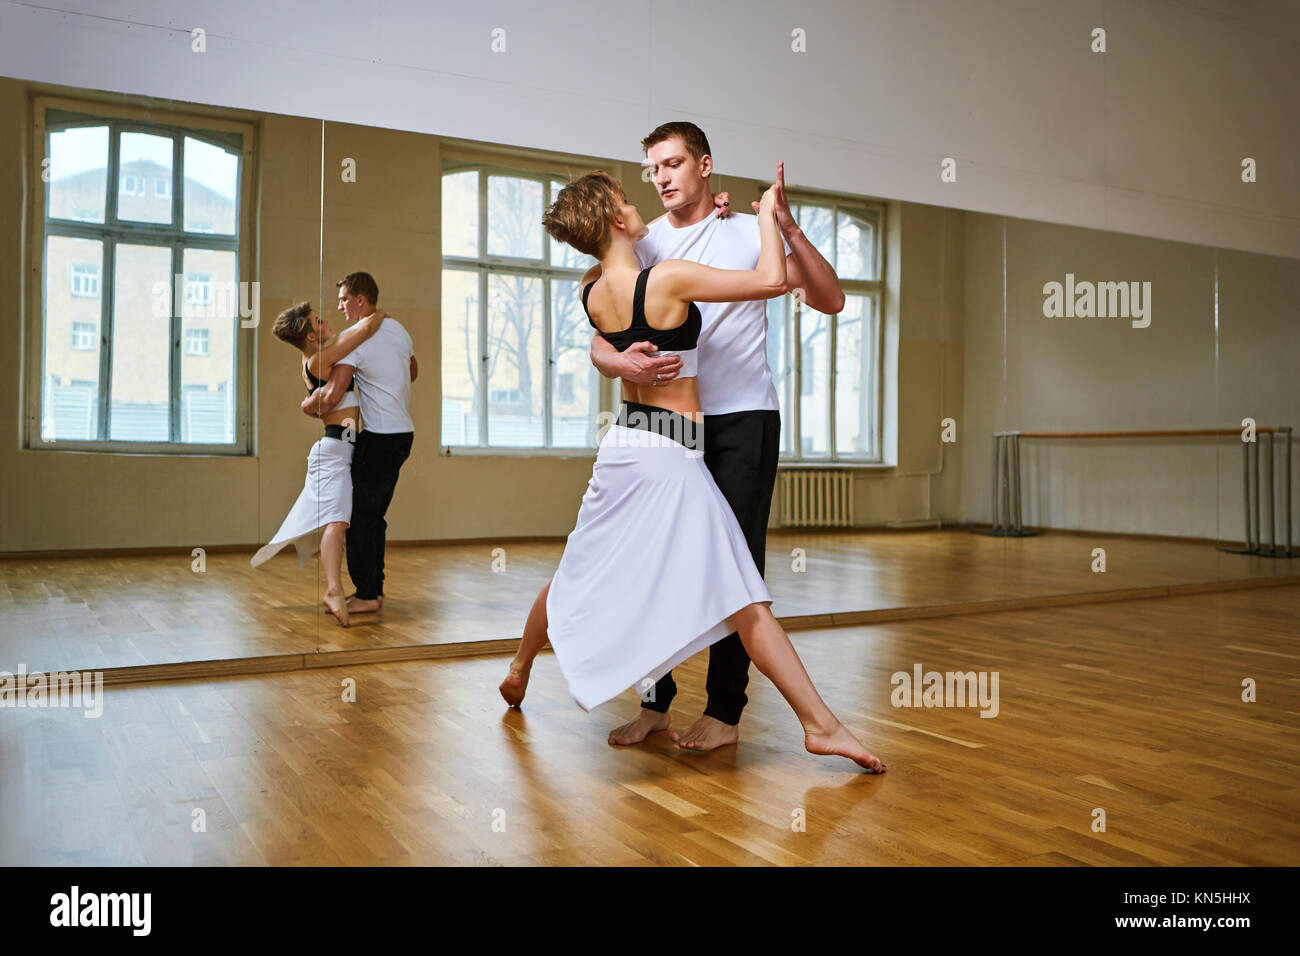 Hermosa pareja bailando tango. joven en blanco y negro y el hombre vestido  de ropa deportiva que practica en estudio de baile sala de espejo. Copie el  espacio Fotografía de stock -